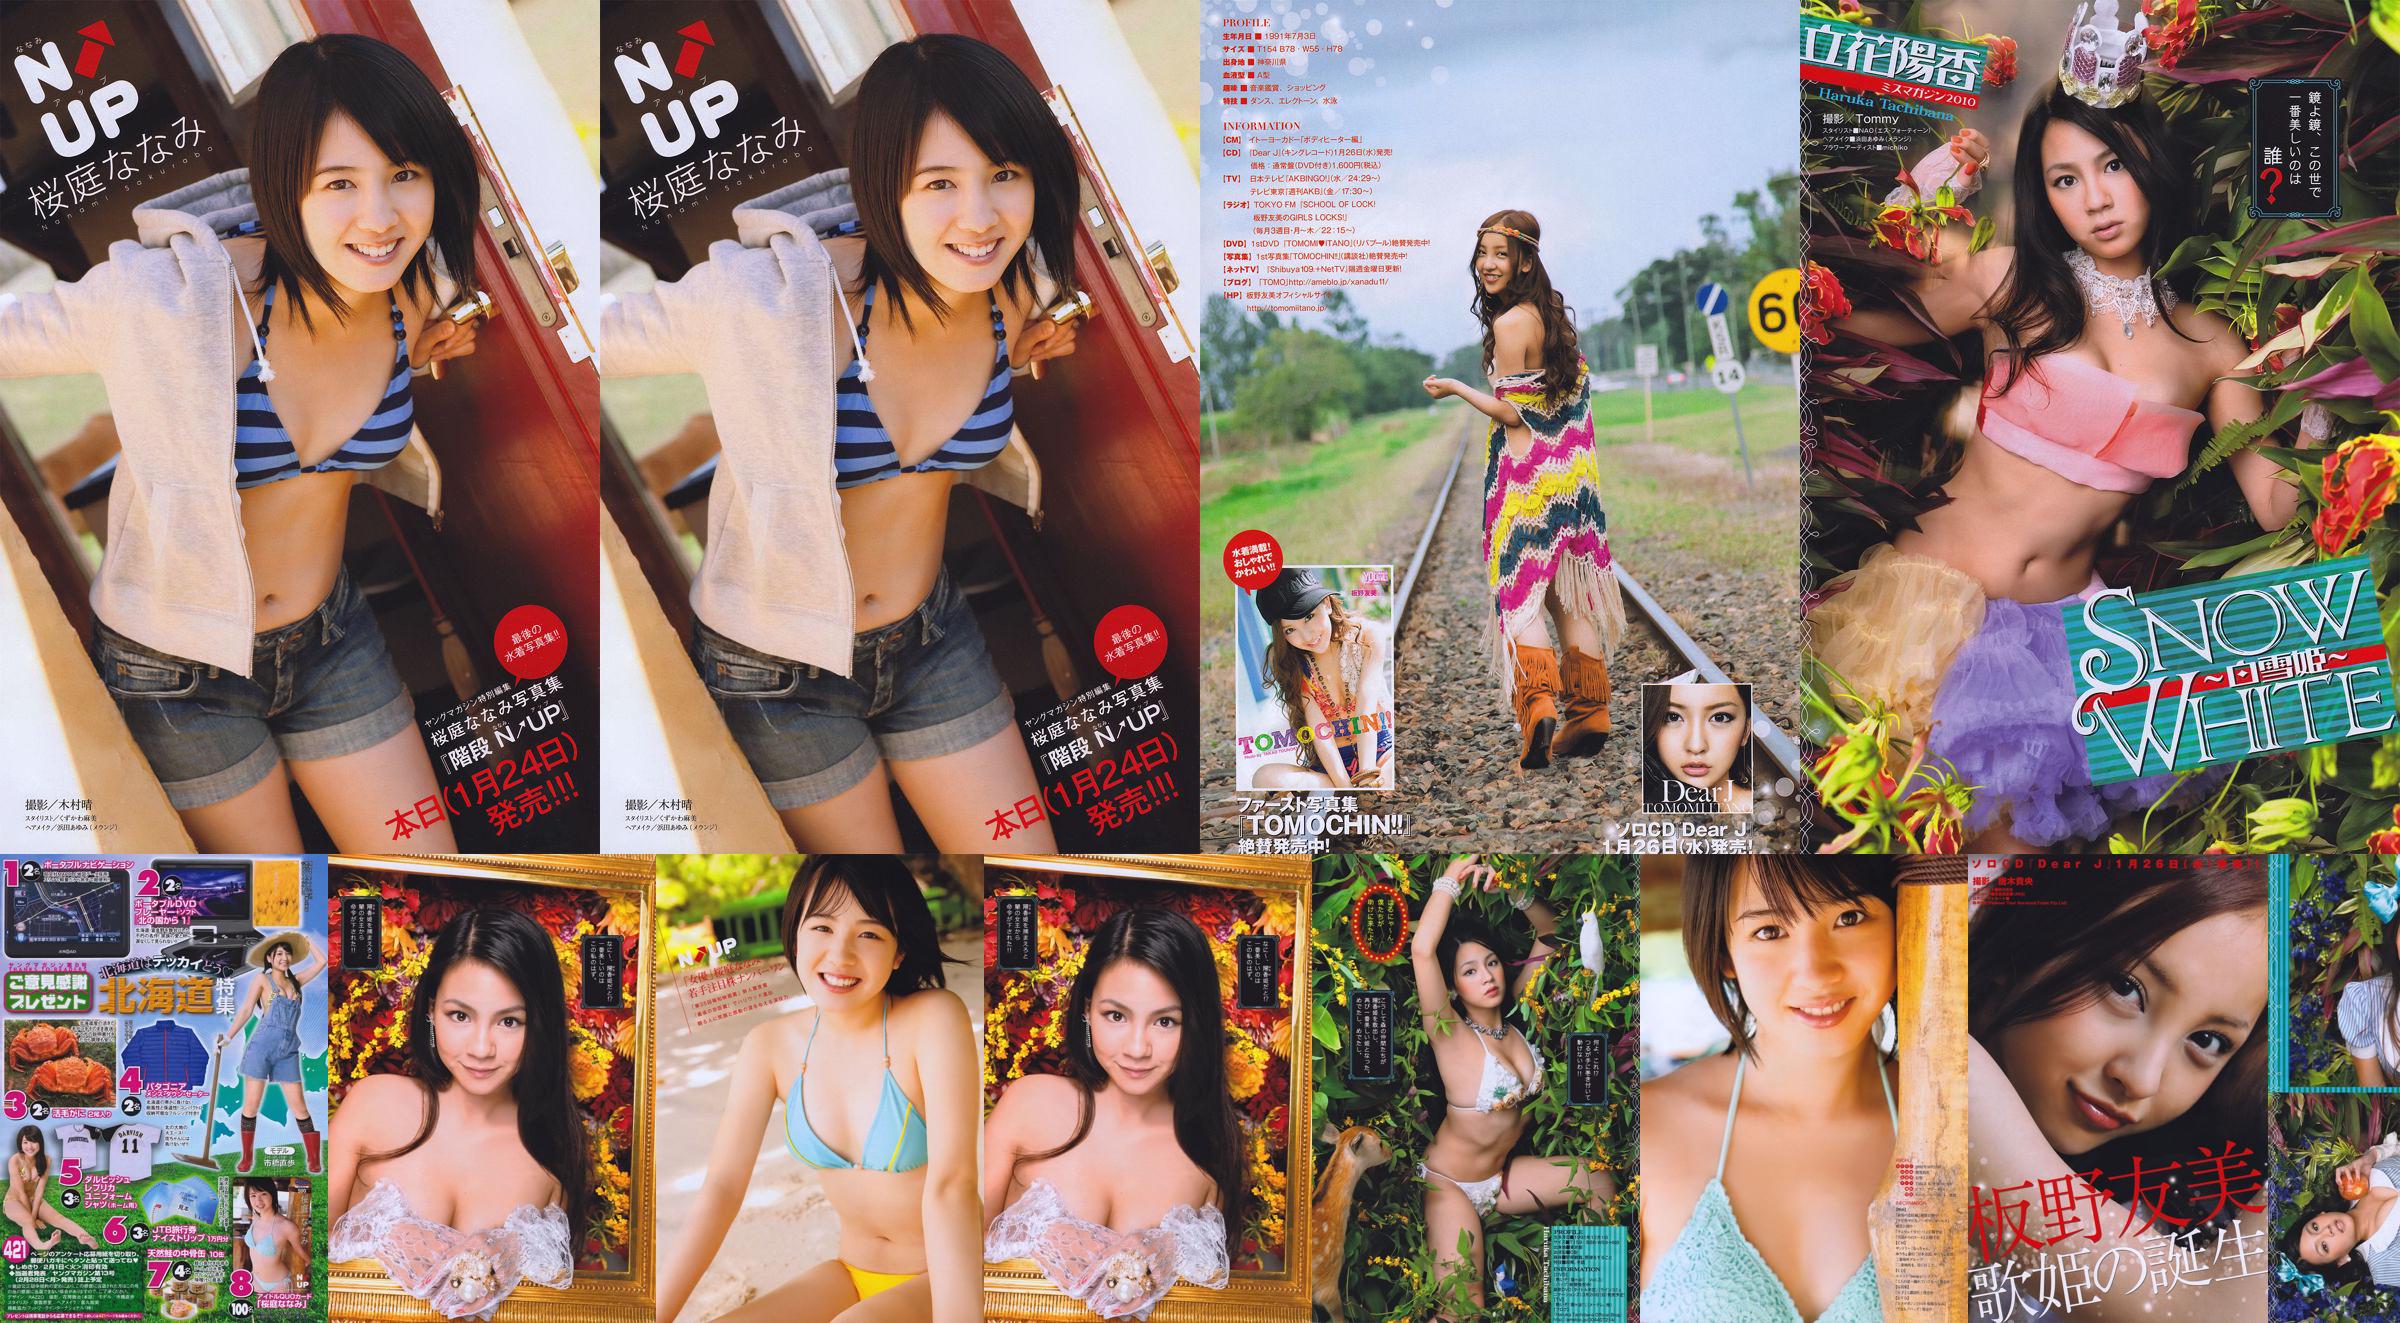 [Young Magazine] Nanami Sakuraba 2011 No.08 Photograph No.1e9a0e Page 1